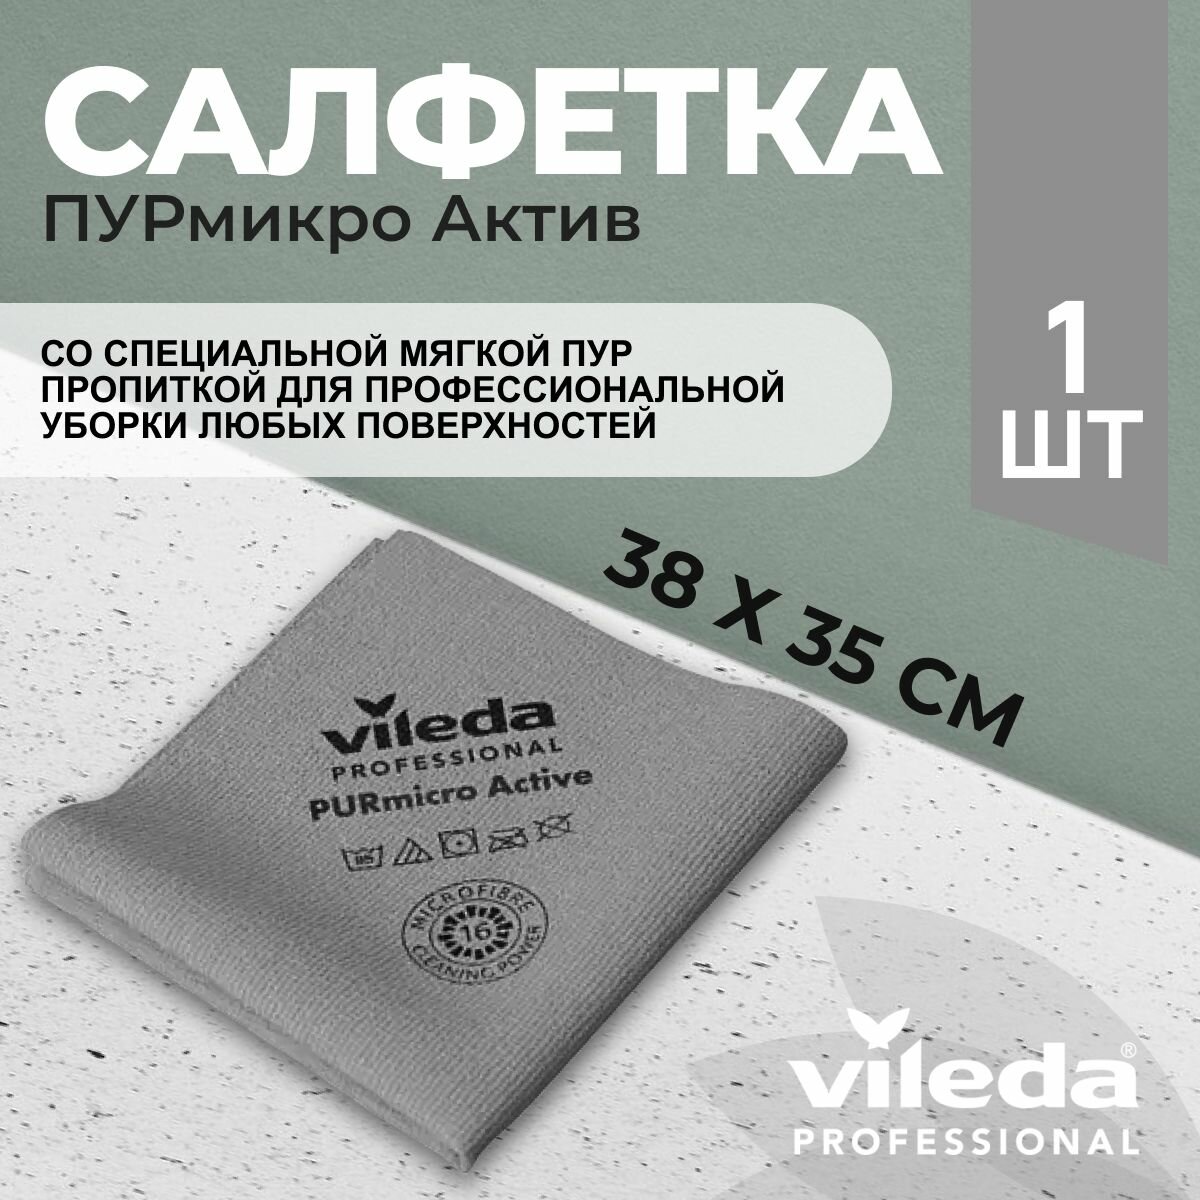 Салфетка профессиональная для уборки из микроволокна Vileda ПУРмикро Актив PURmicro Active 38х35 см серый 1 шт.